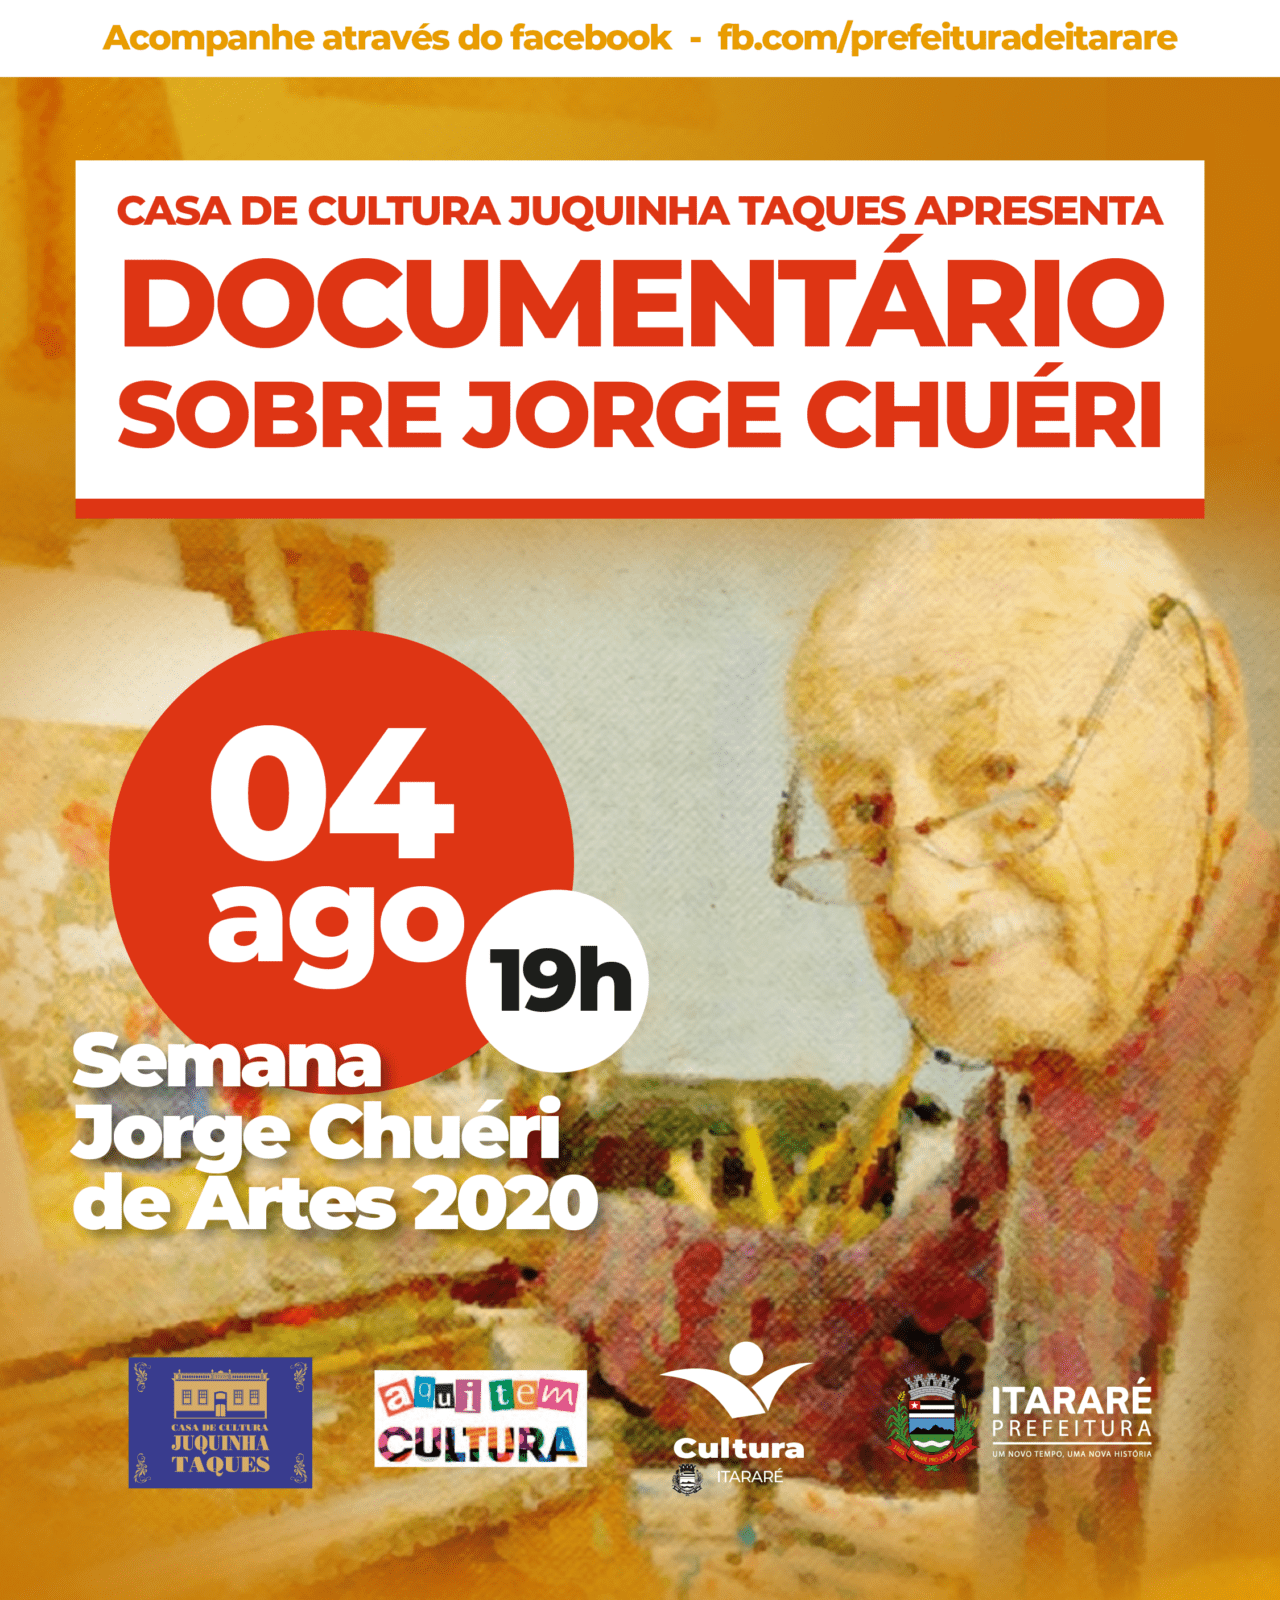 II Semana Jorge Chuéri de Artes: Prefeitura de Itararé (SP) divulgará documentário sobre o artista nesta terça-feira (04)